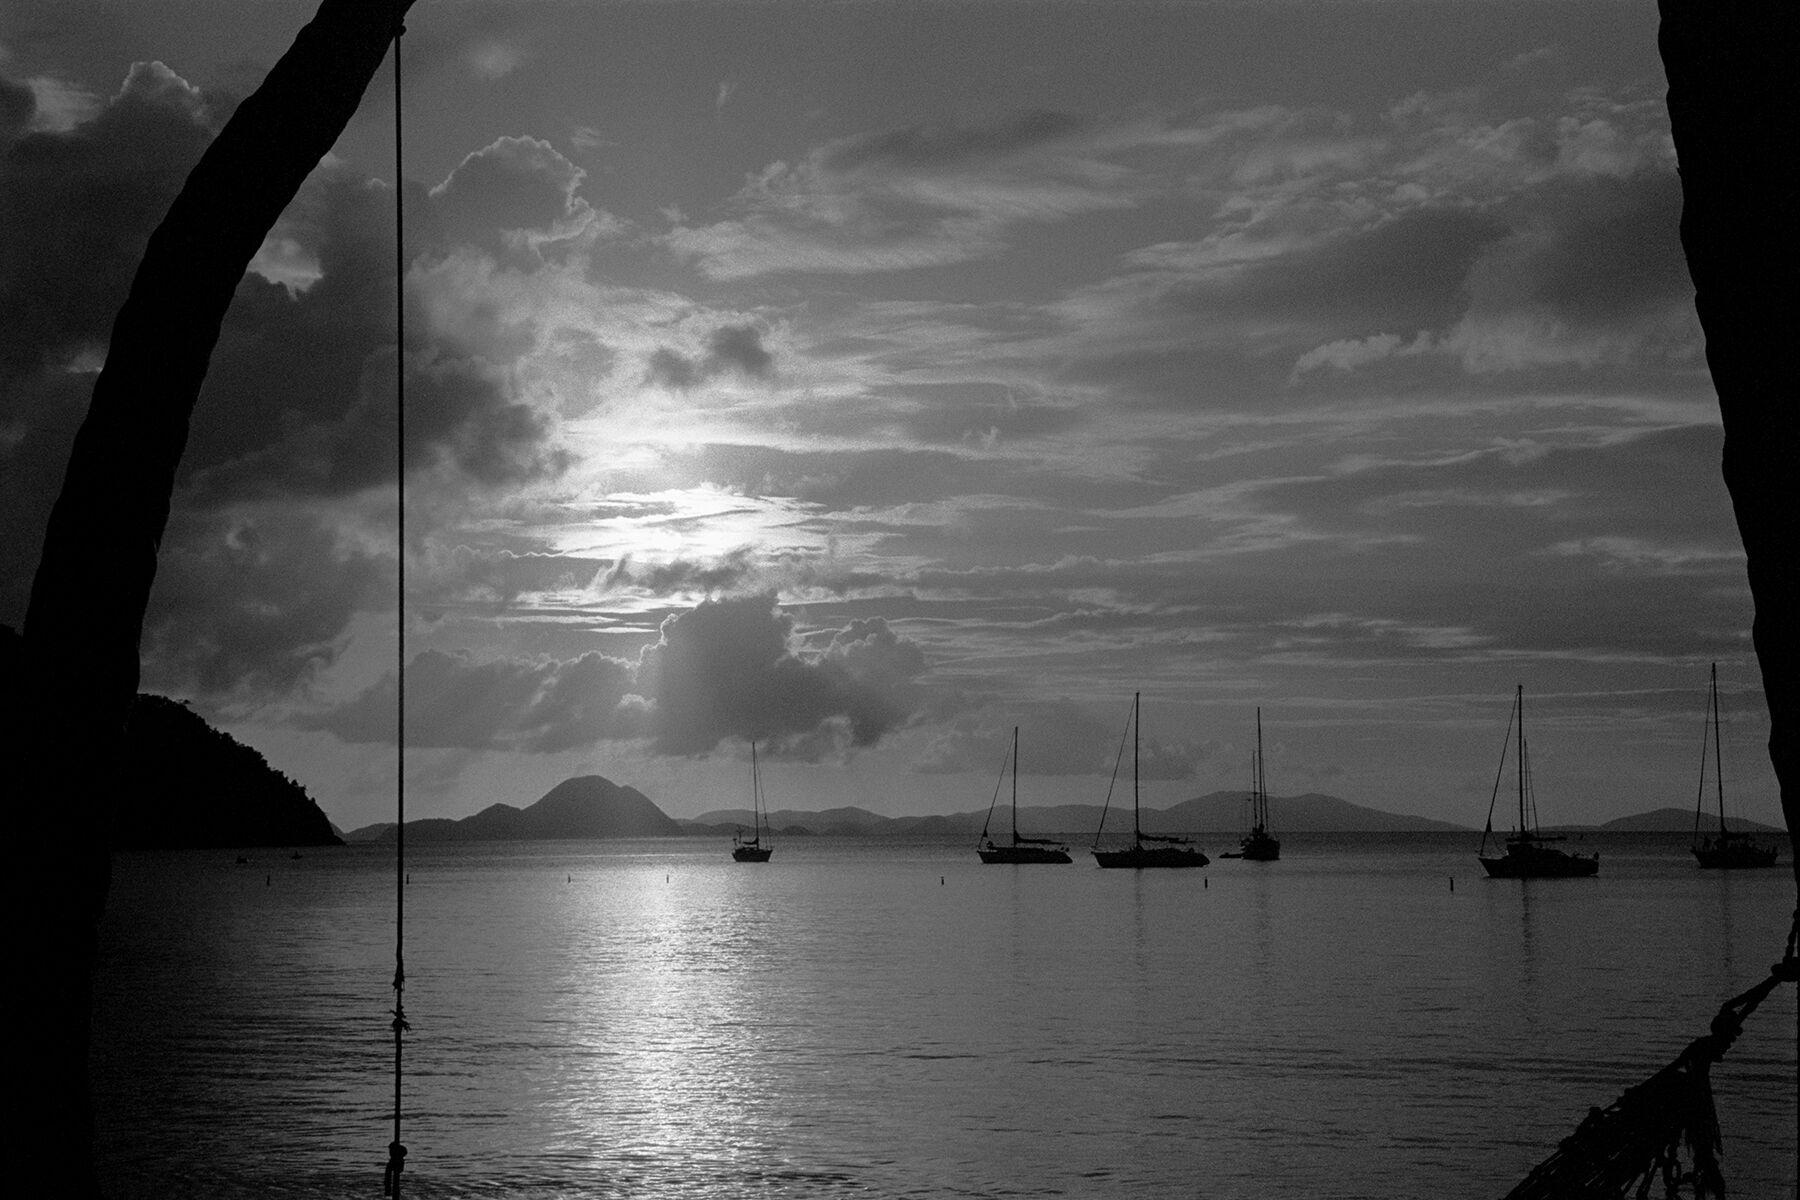 Sunset Caribbean (Cypte du coucher du soleil), St. Thomas, 1989